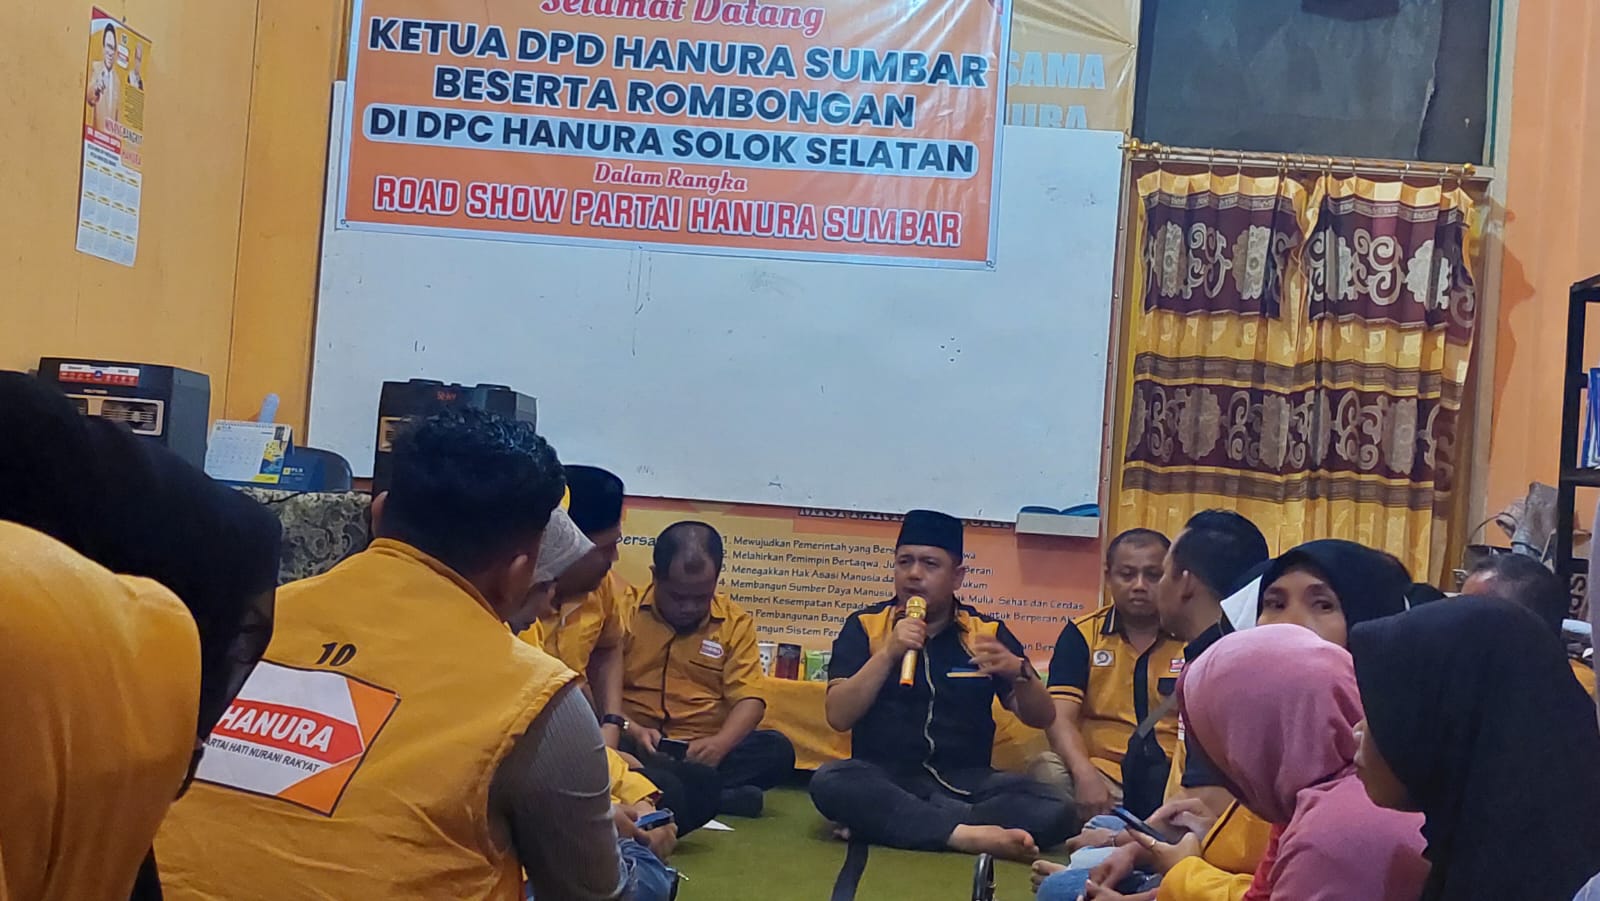 Ketua DPD Hanura Sumatera Barat (Sumbar), Febby Dt. Bangso dihadapan pengurus DPC Hanura Kabupaten Solok Selatan dalam lanjutan roadshow DPD Hanura Sumbar  